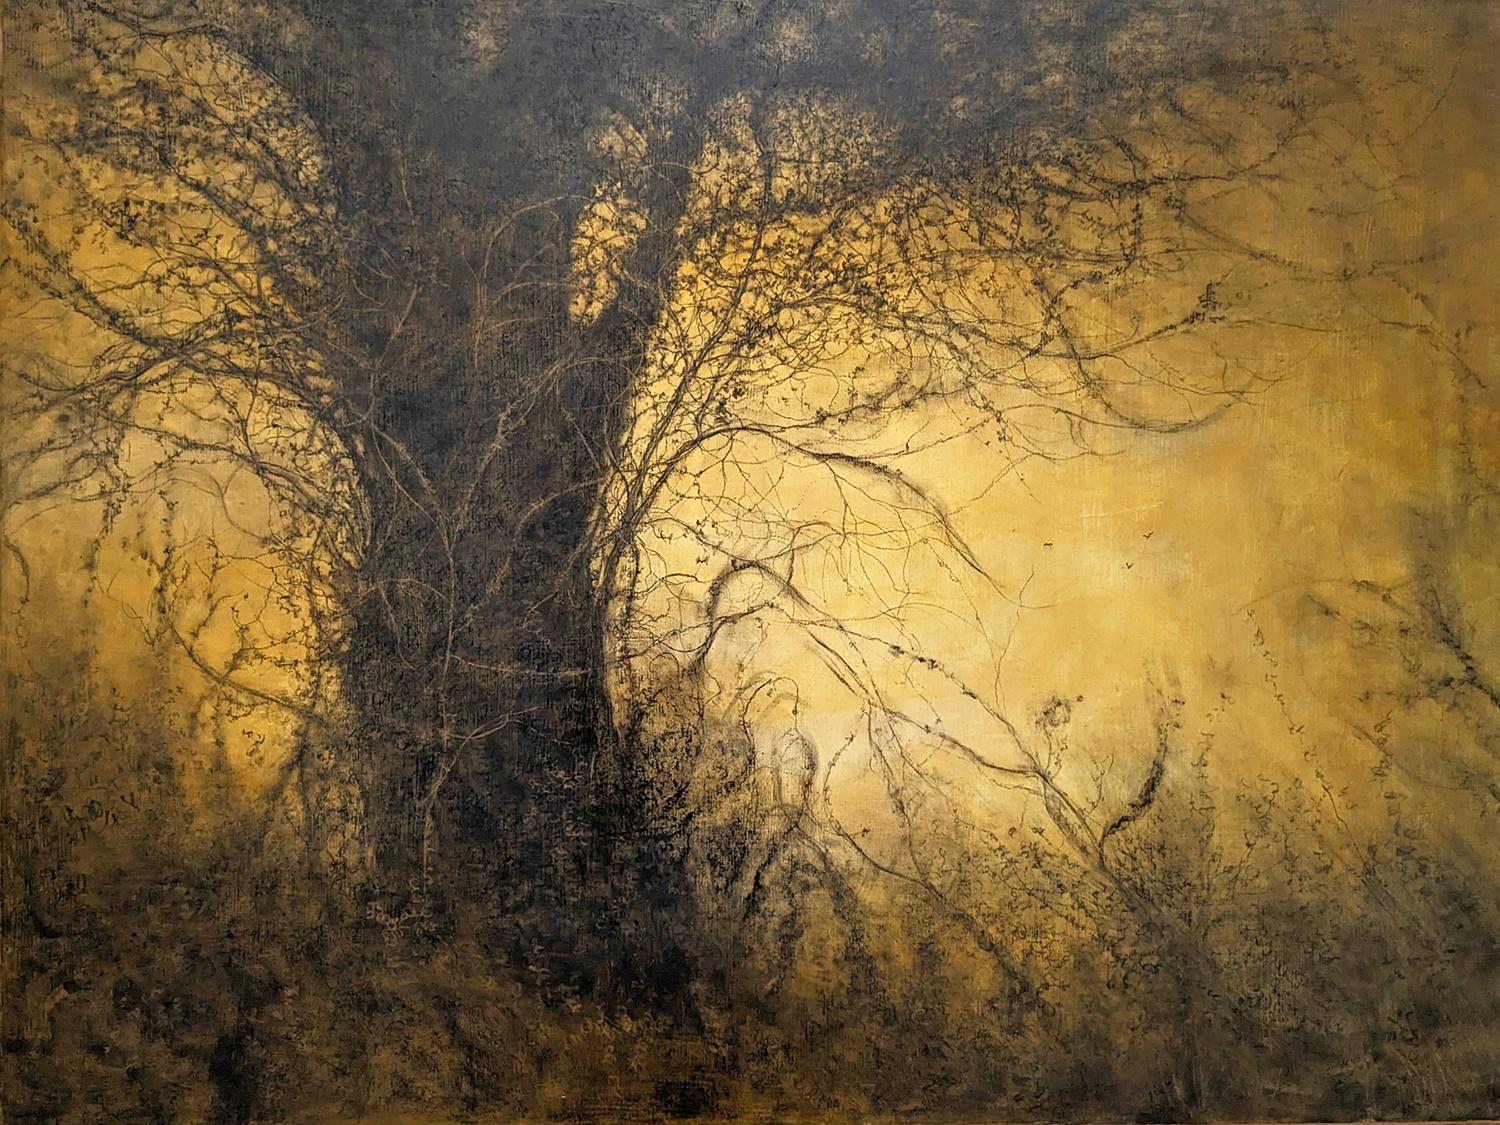 Sue Bryan Landscape Painting – The Golden Hour (Sonnen gewaschene Landschaft, Kohlezeichnung von Bäumen im Wald)